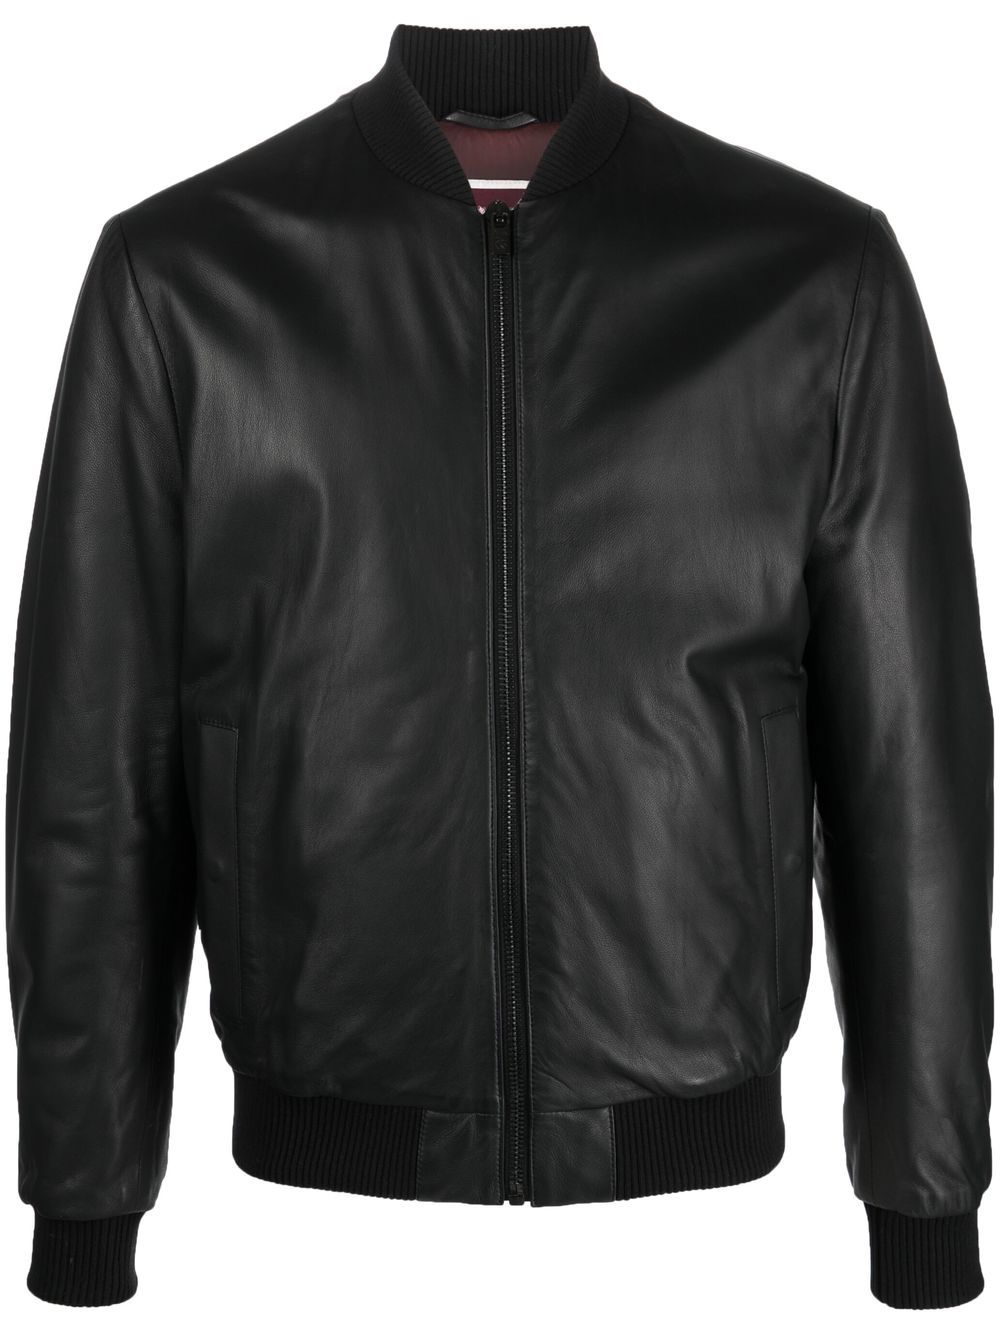 PAL ZILERI Suit jackets | Smart Closet